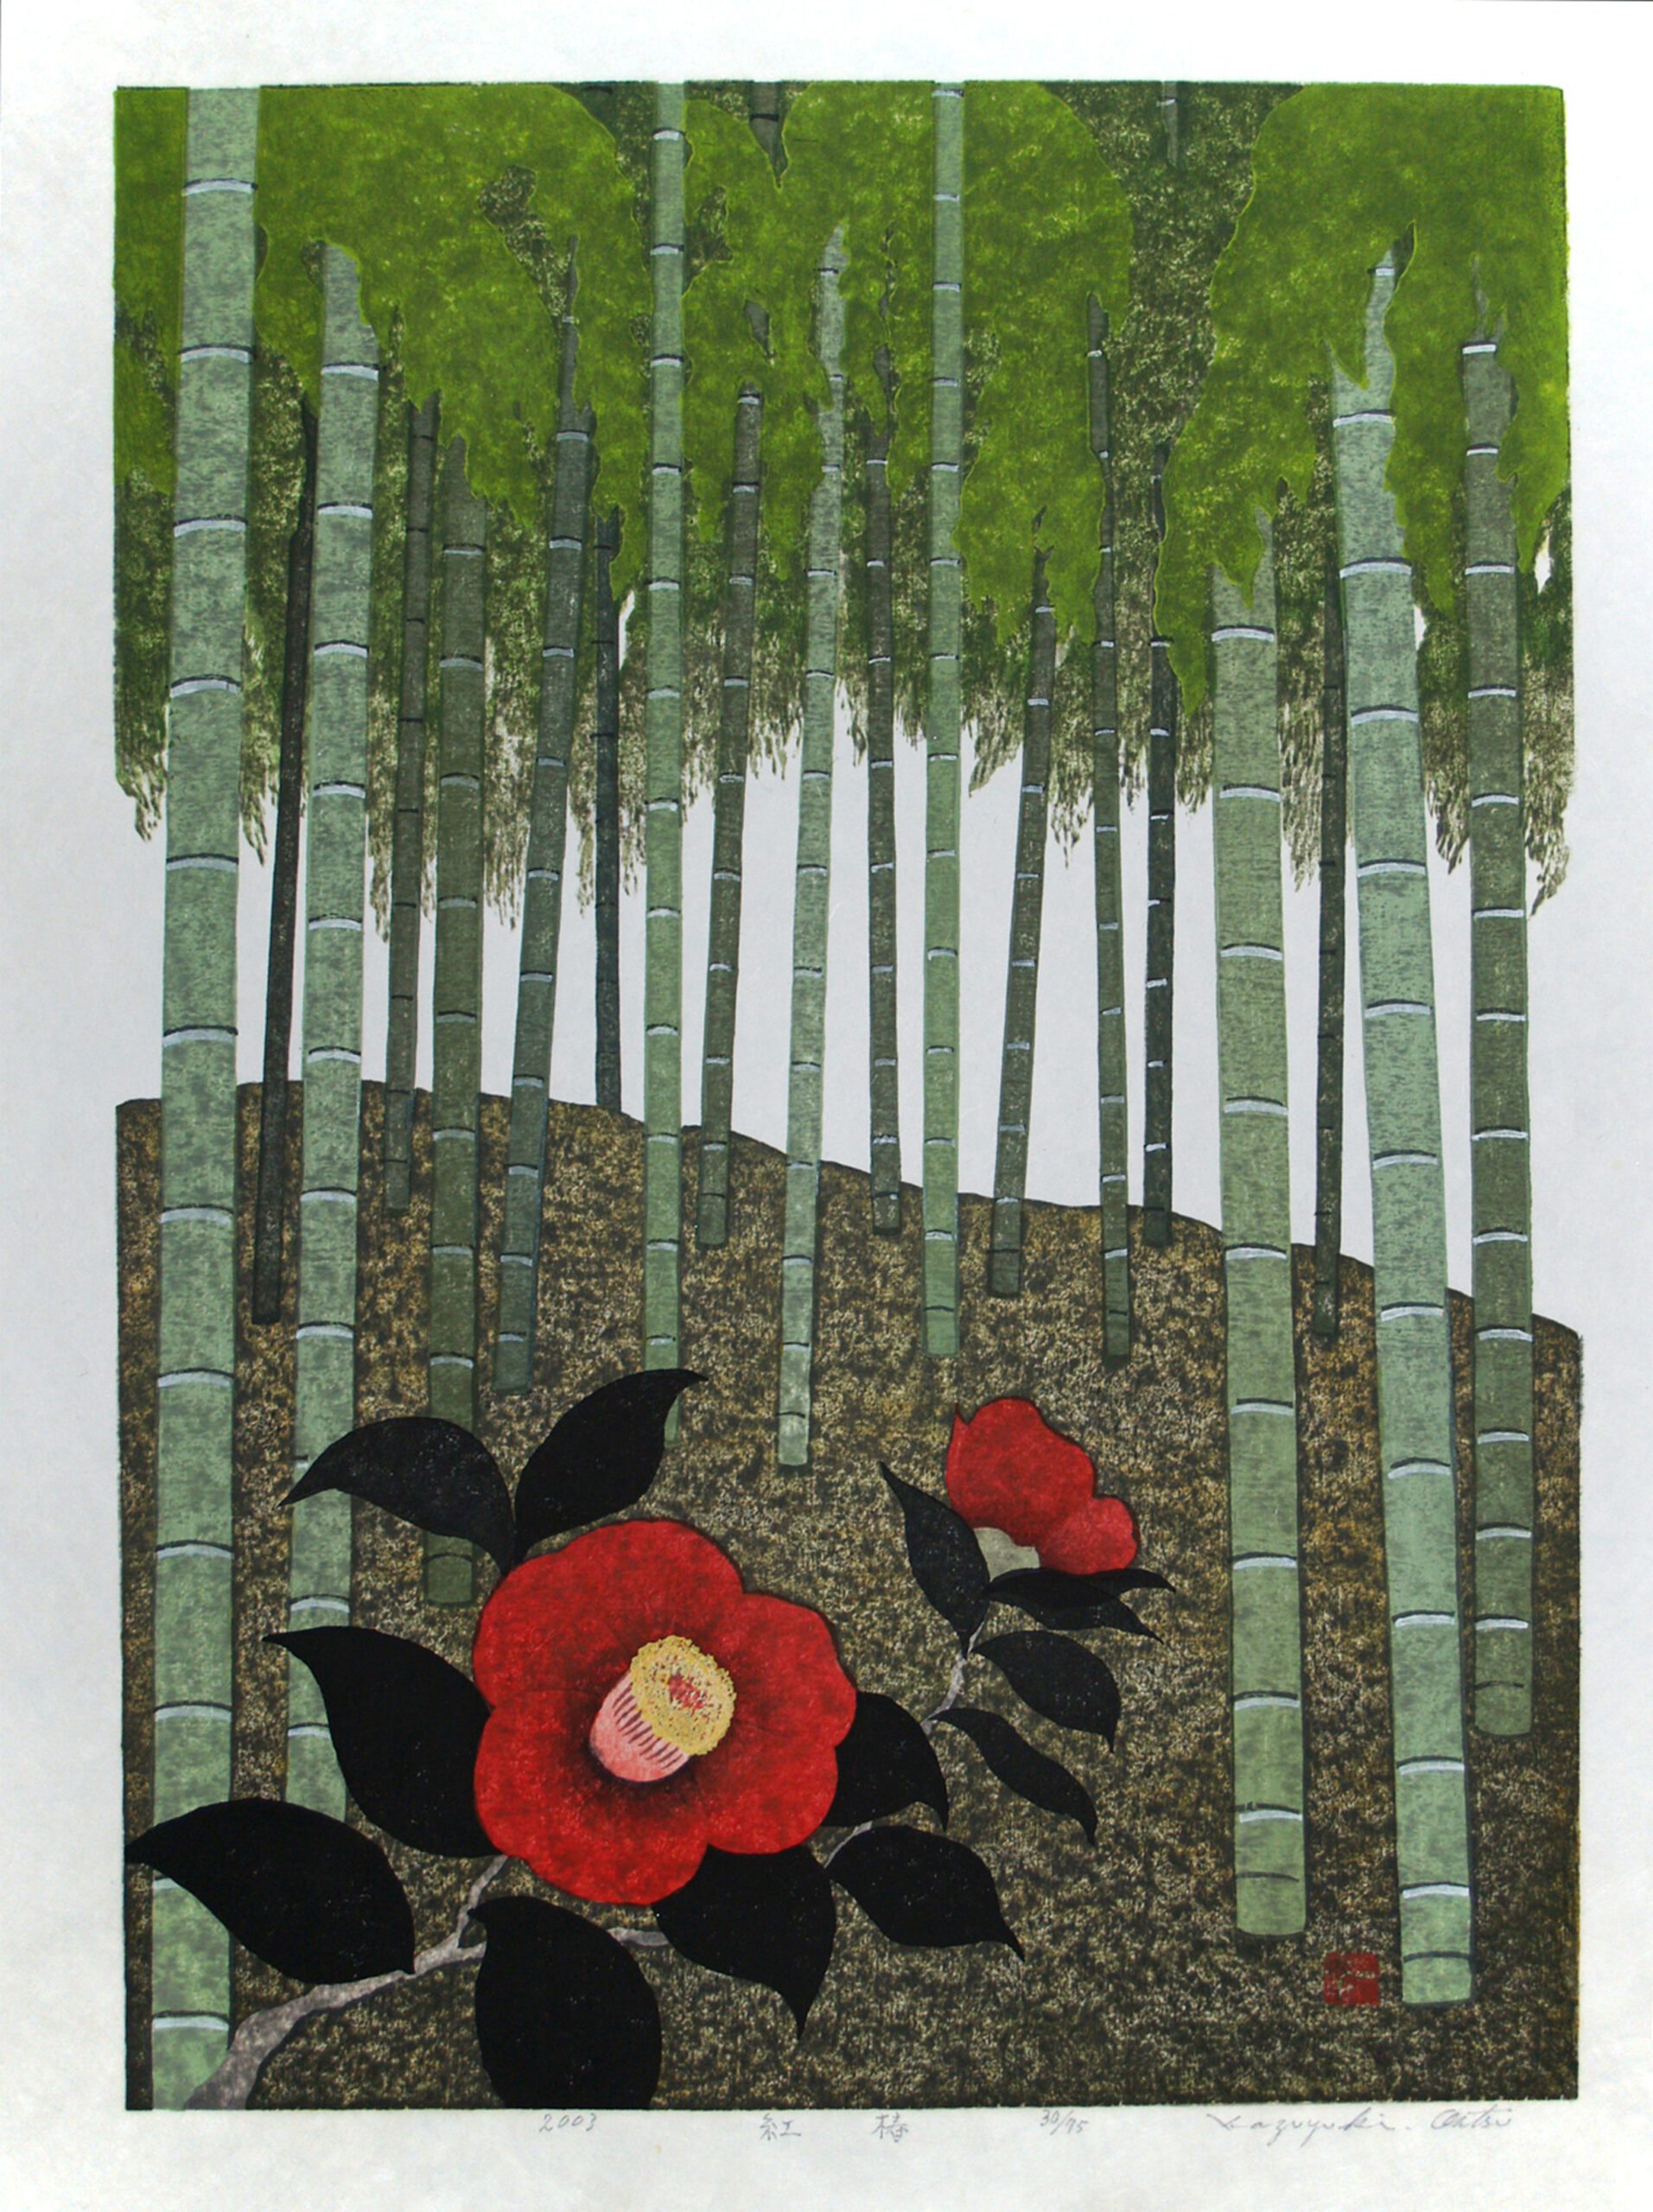 Kazuyuki Ohtsu - "Red Camellia" - 2003, Woodcut, Ed of 75, Sheet size 49 x 38 cm